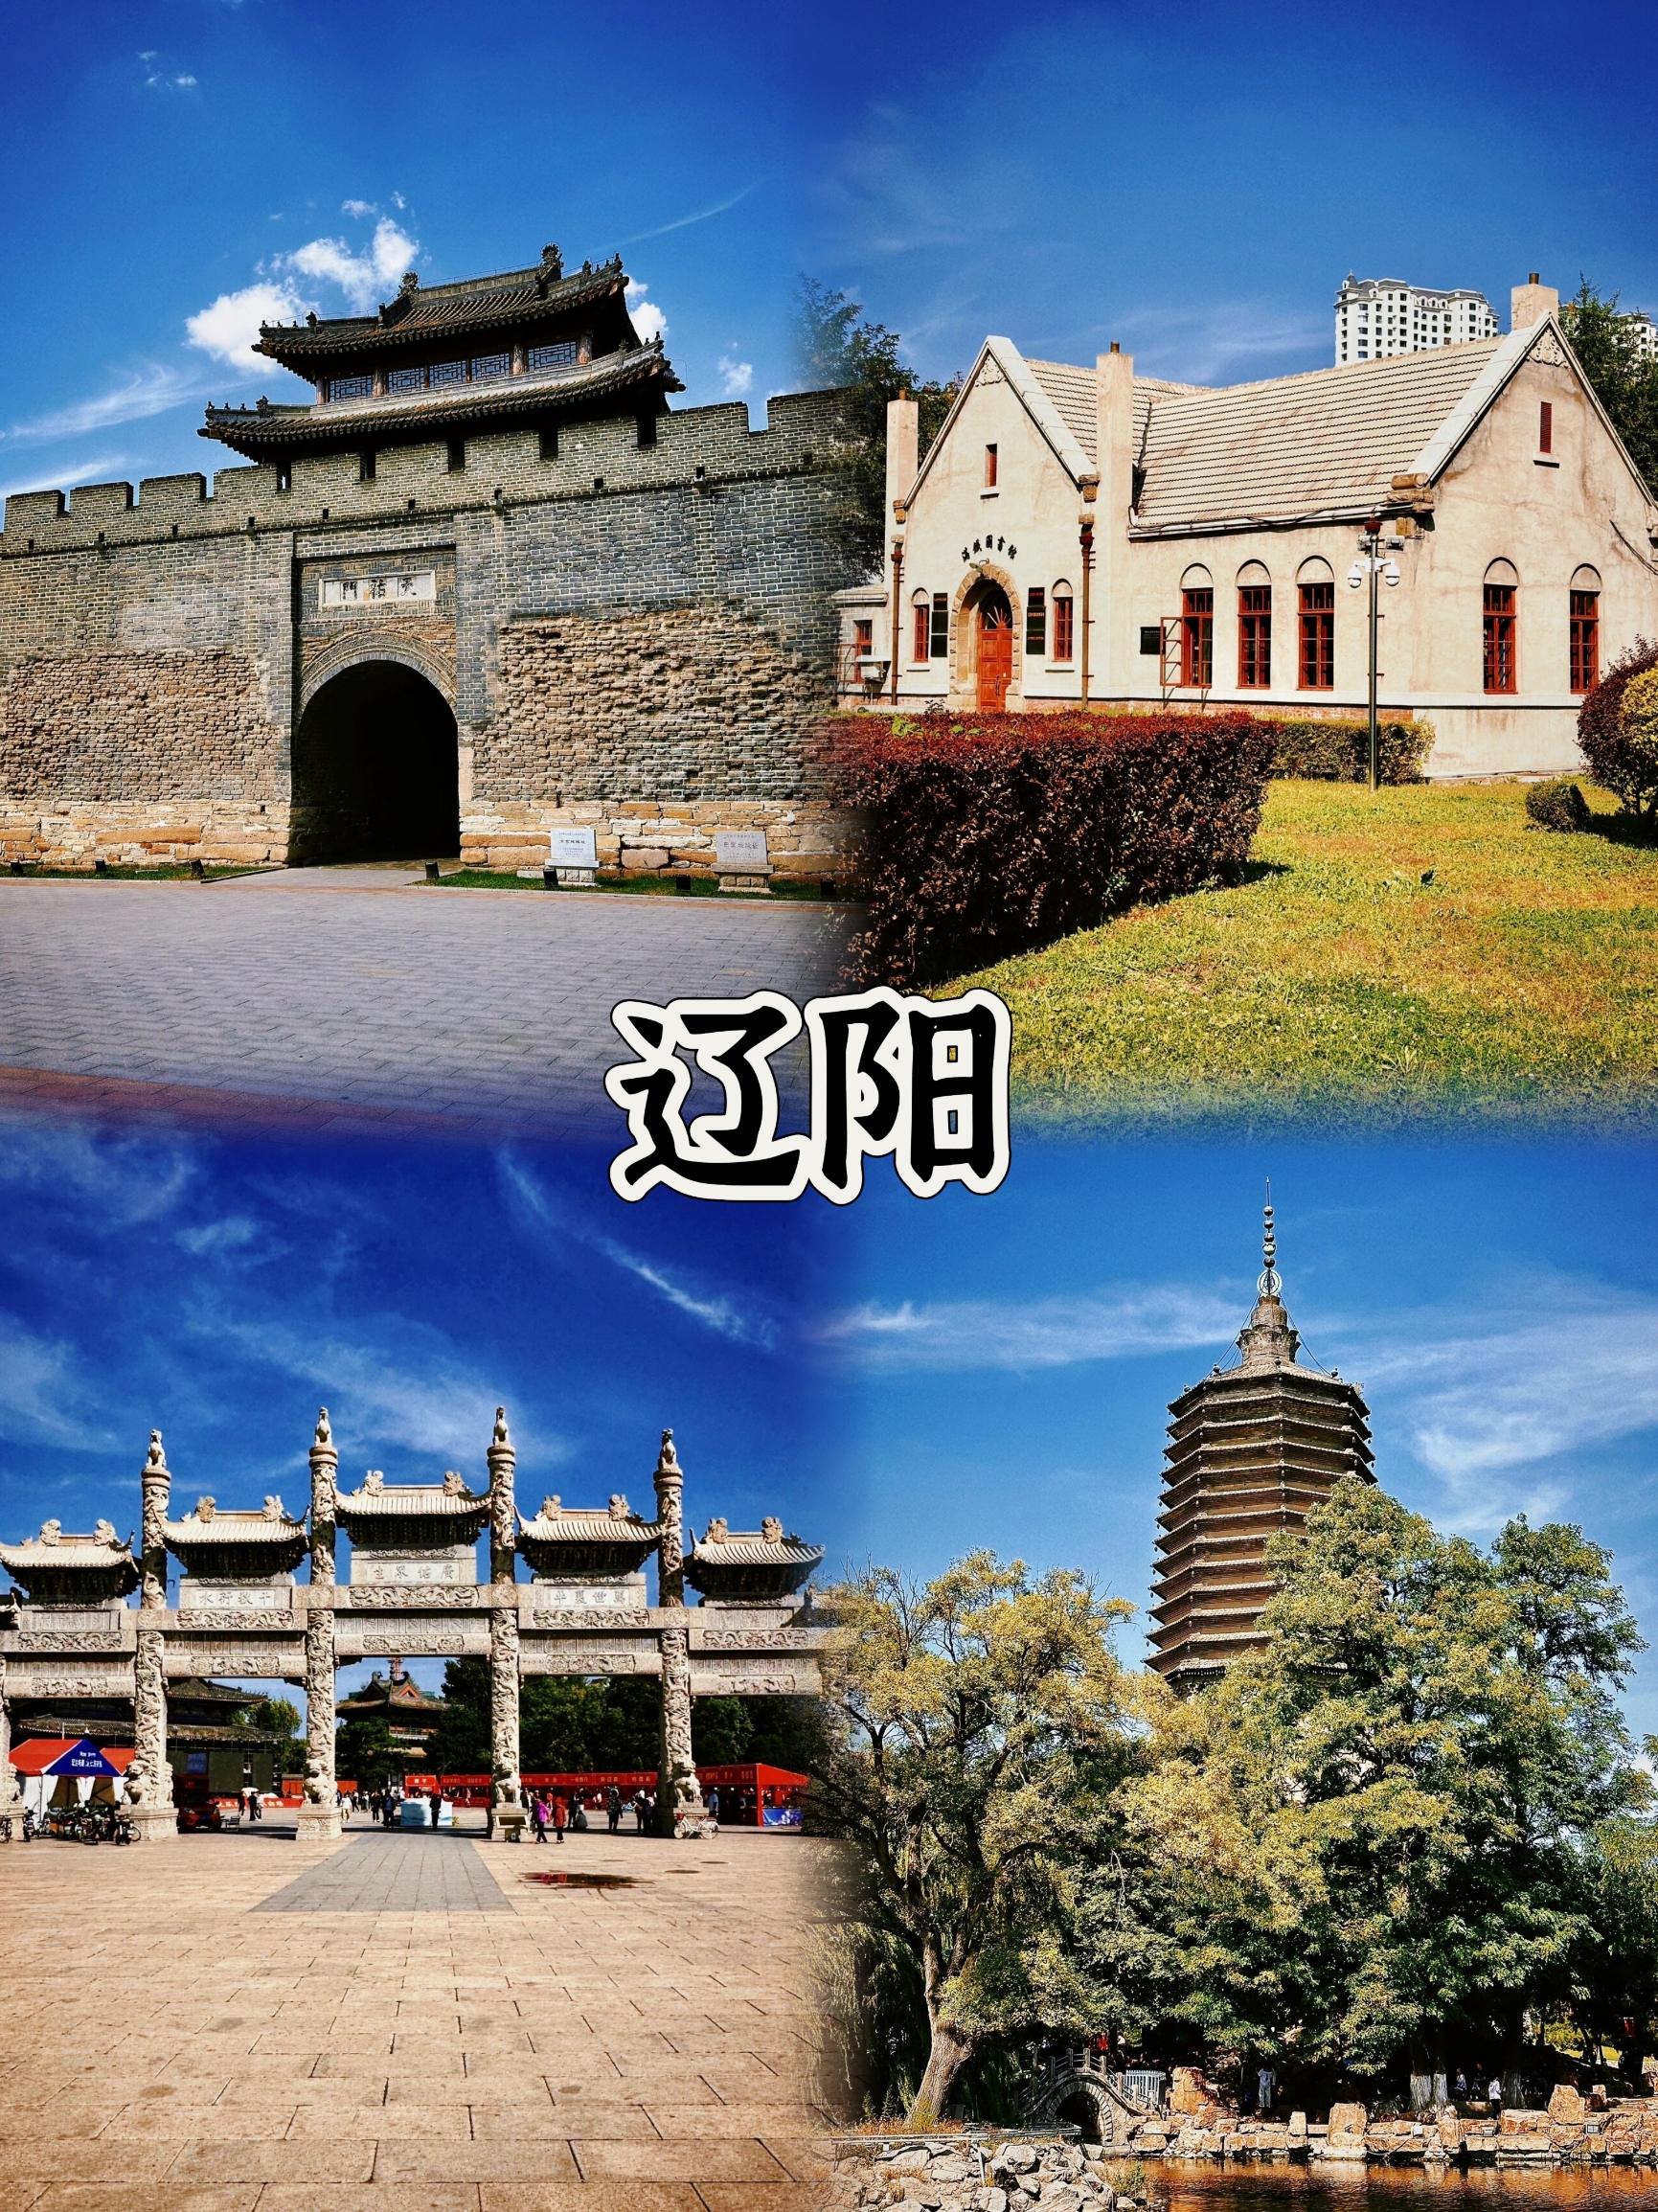 【辽宁·辽阳】2400年历史的宝藏城市，等你来探索！🏰📷  “辽宁·辽阳，一座拥有2400多年建城史